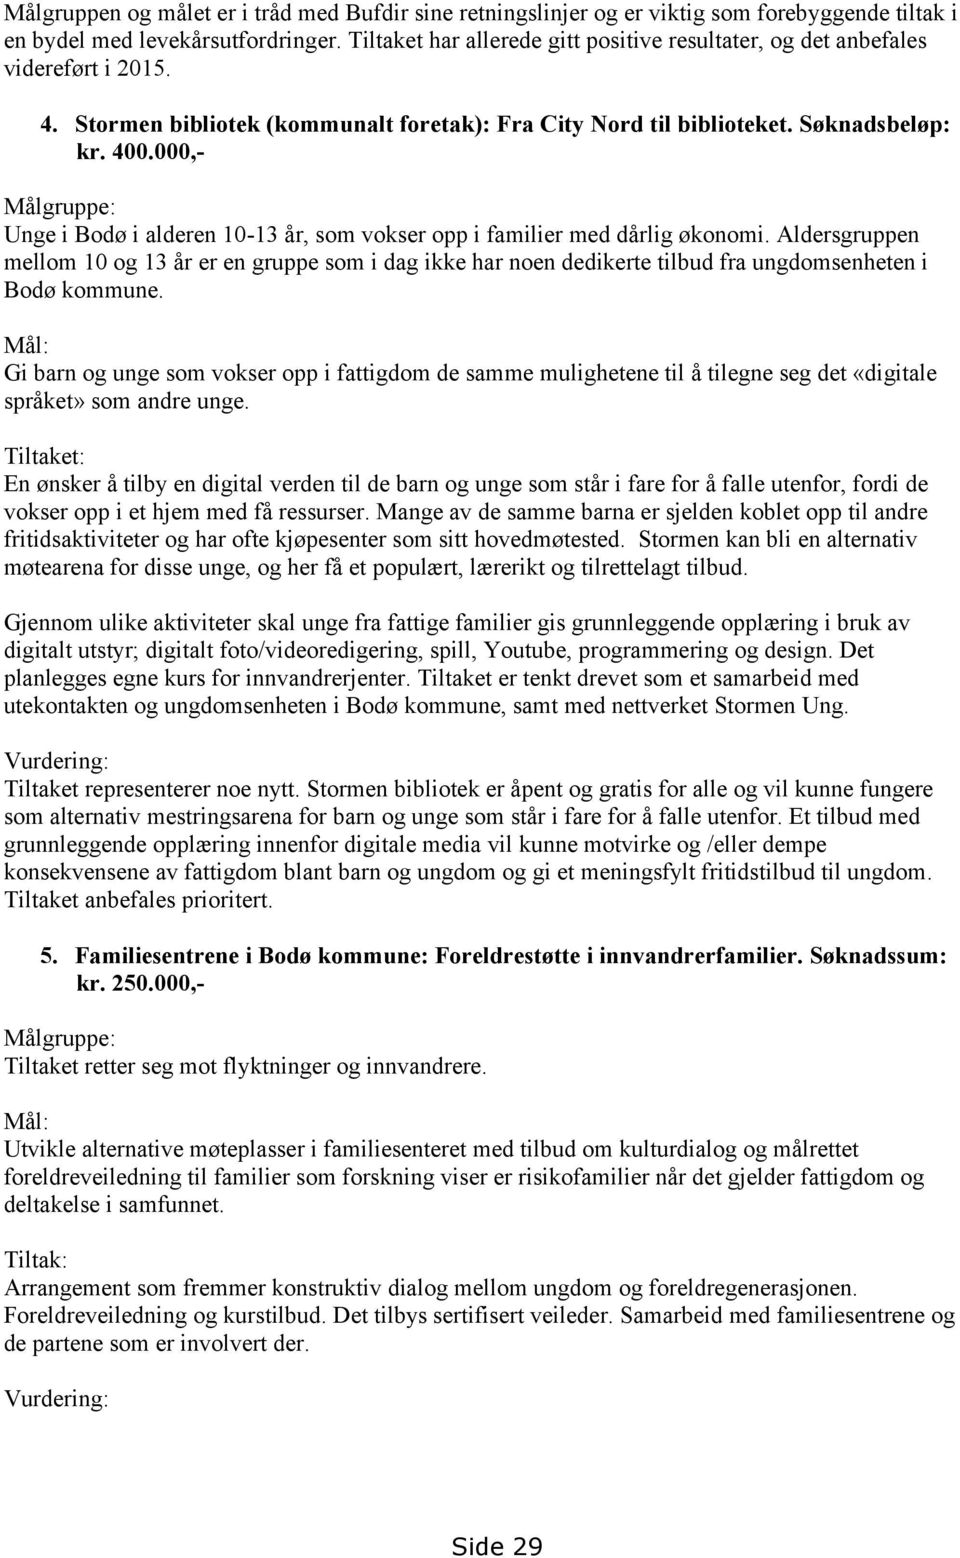 000,- Målgruppe: Unge i Bodø i alderen 10-13 år, som vokser opp i familier med dårlig økonomi.